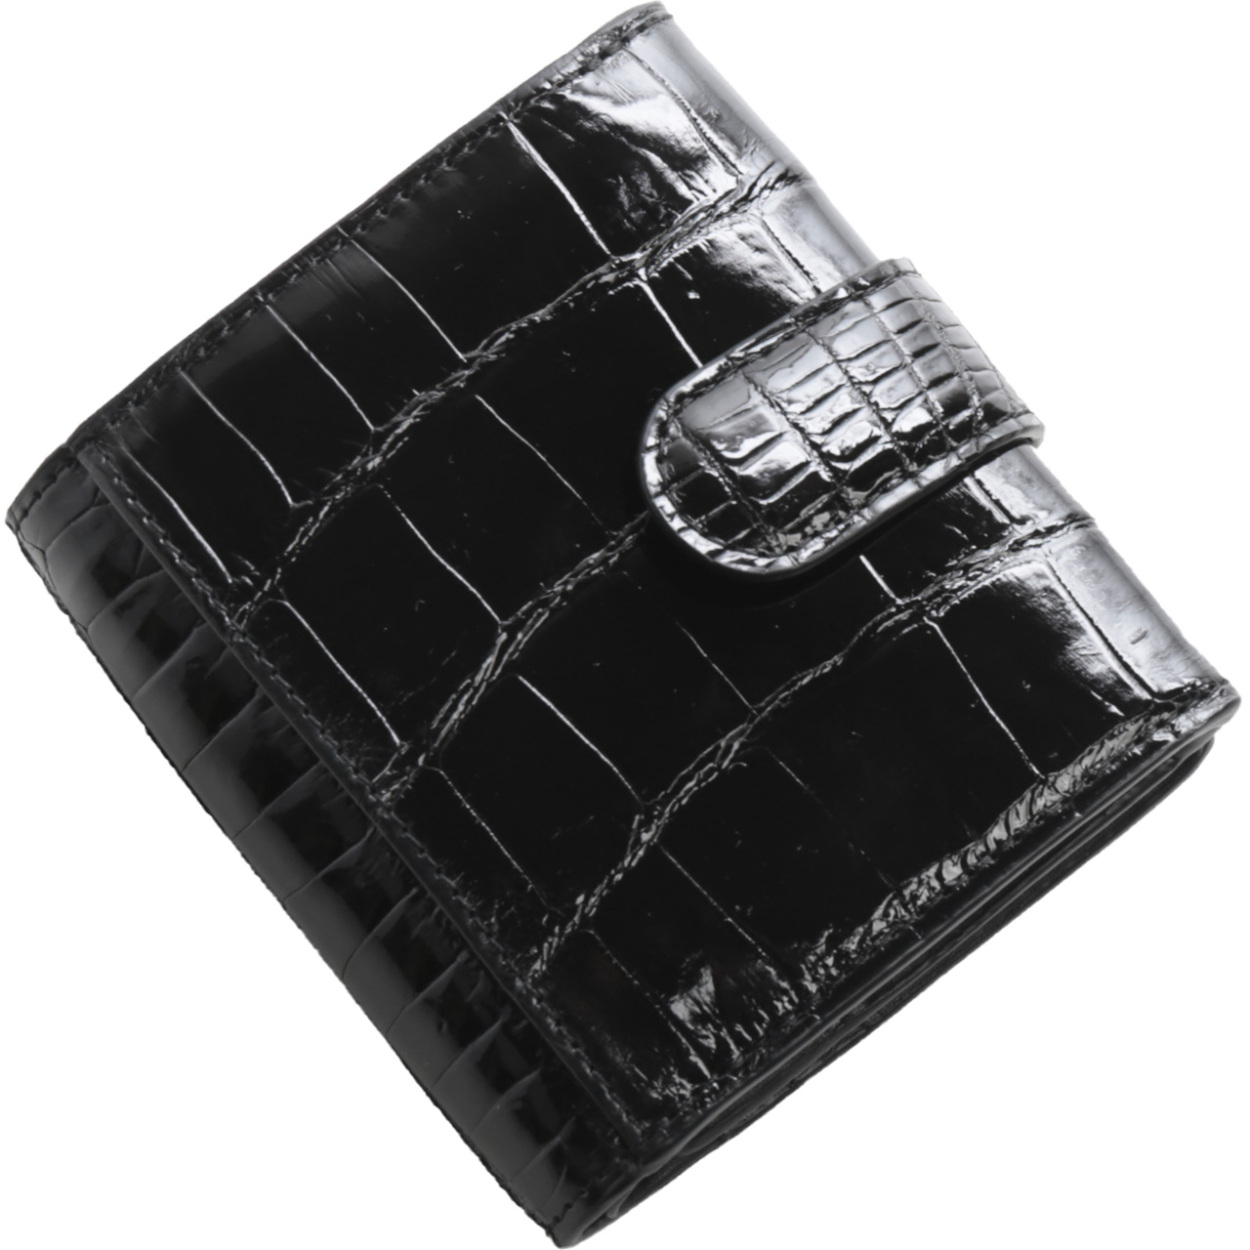 クロコダイル 財布 ミニ メンズ ボックス型 シャイニング (06001613-mens-1r) バ...